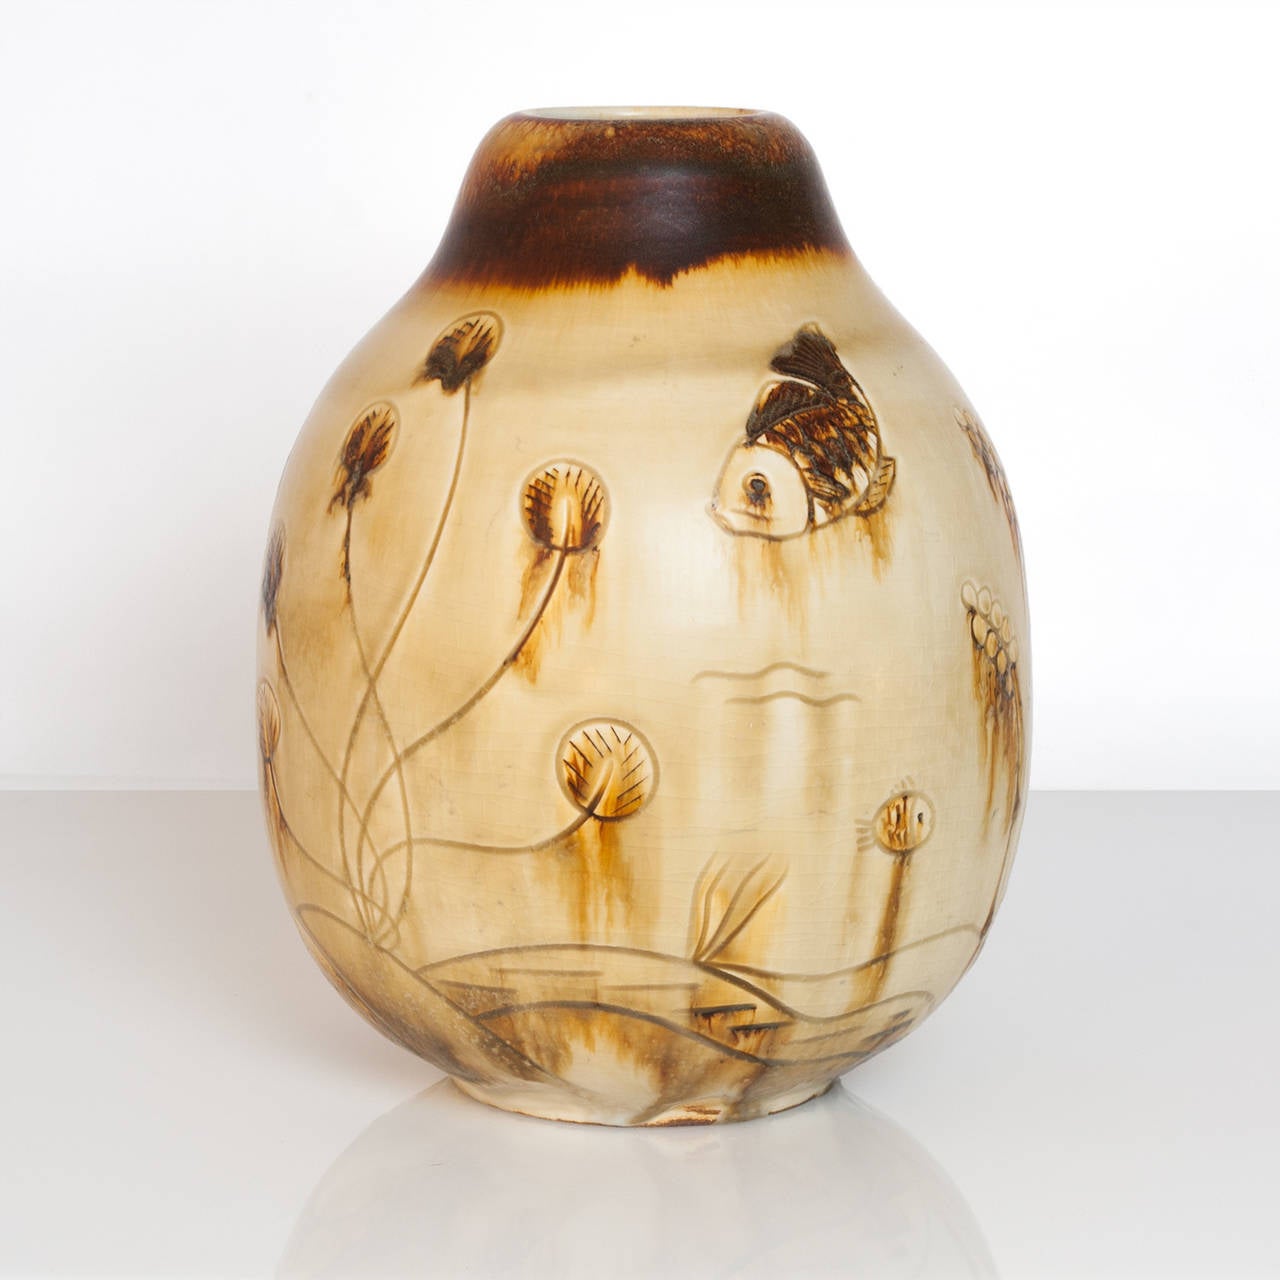 The Modern Scandinavian Studio vase en céramique unique de Gertrud Lonegren pour Rorstrand. Ce vase représente une scène sous-marine avec divers poissons et plantes. Ses pièces sont connues pour leurs surfaces texturées combinées à une utilisation